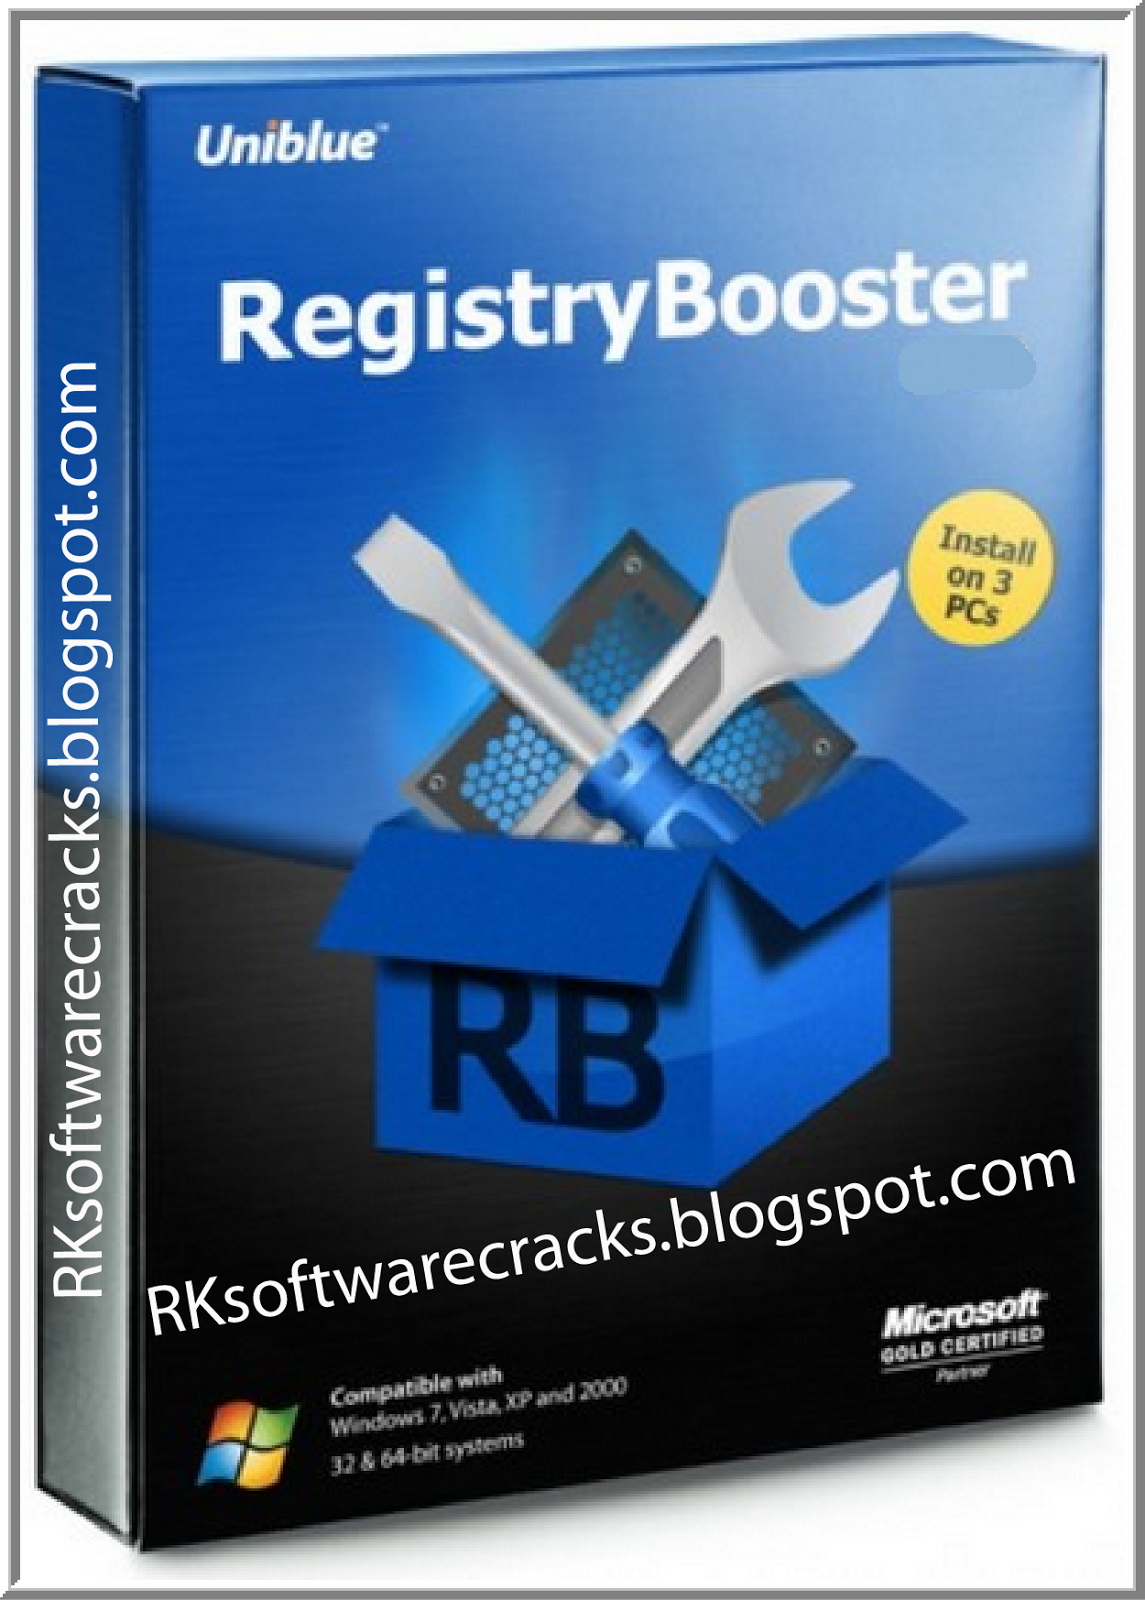 Uniblue registry booster 2 crack